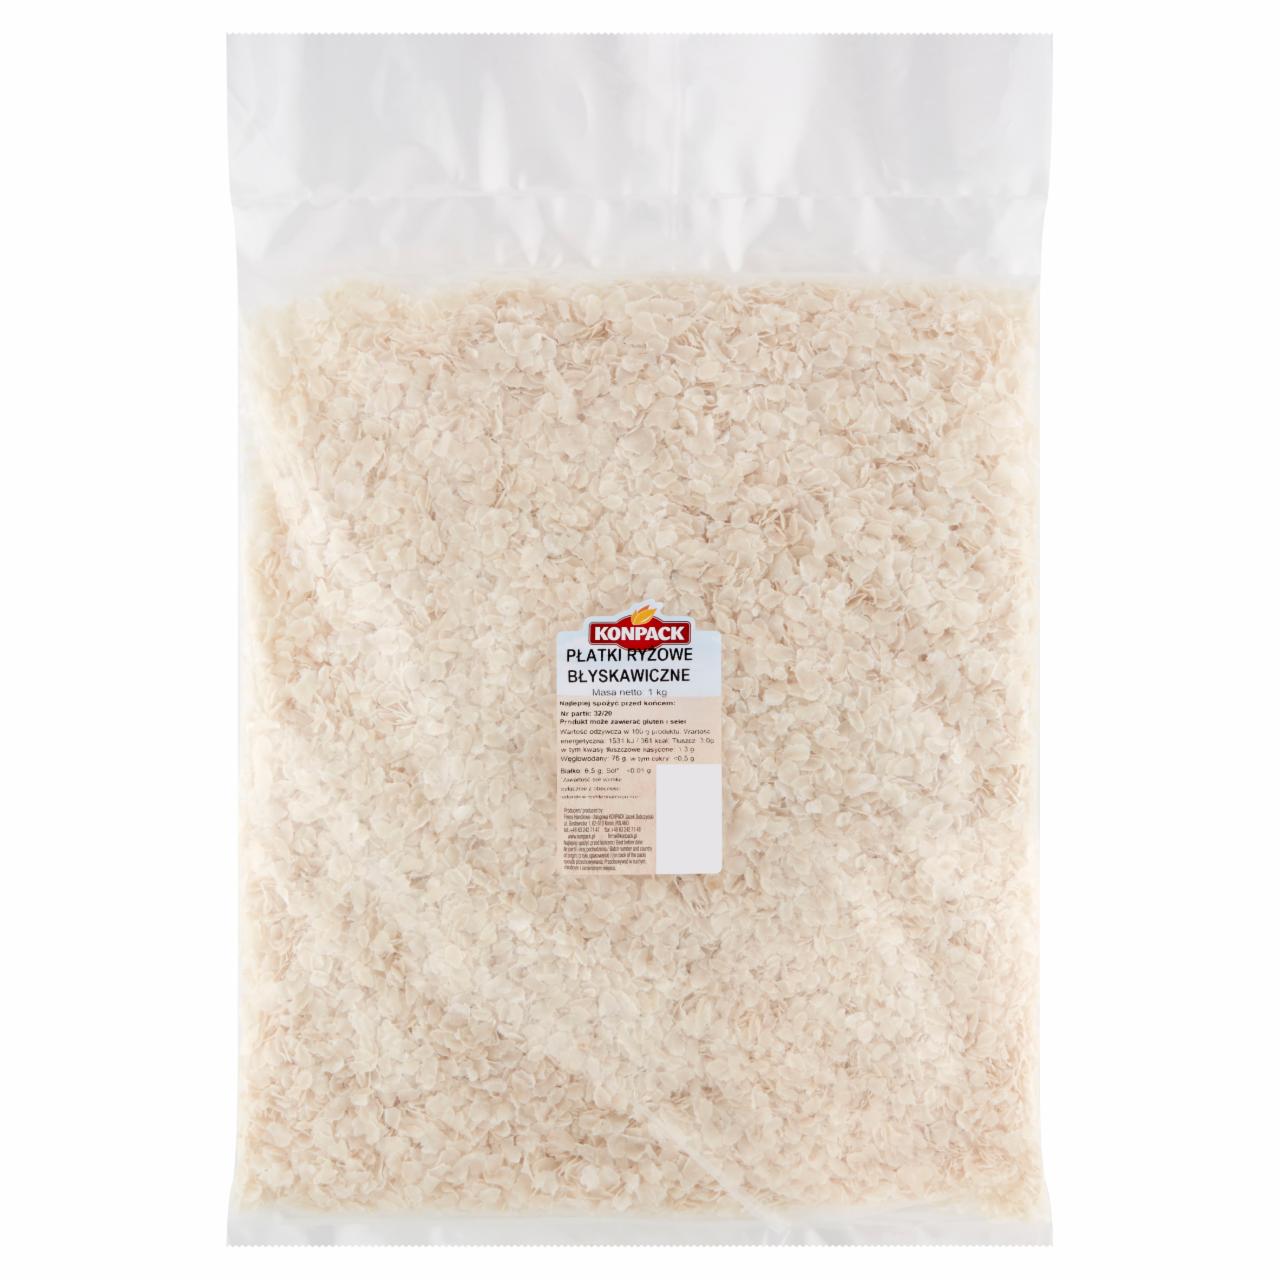 Zdjęcia - Konpack Płatki ryżowe błyskawiczne 1 kg